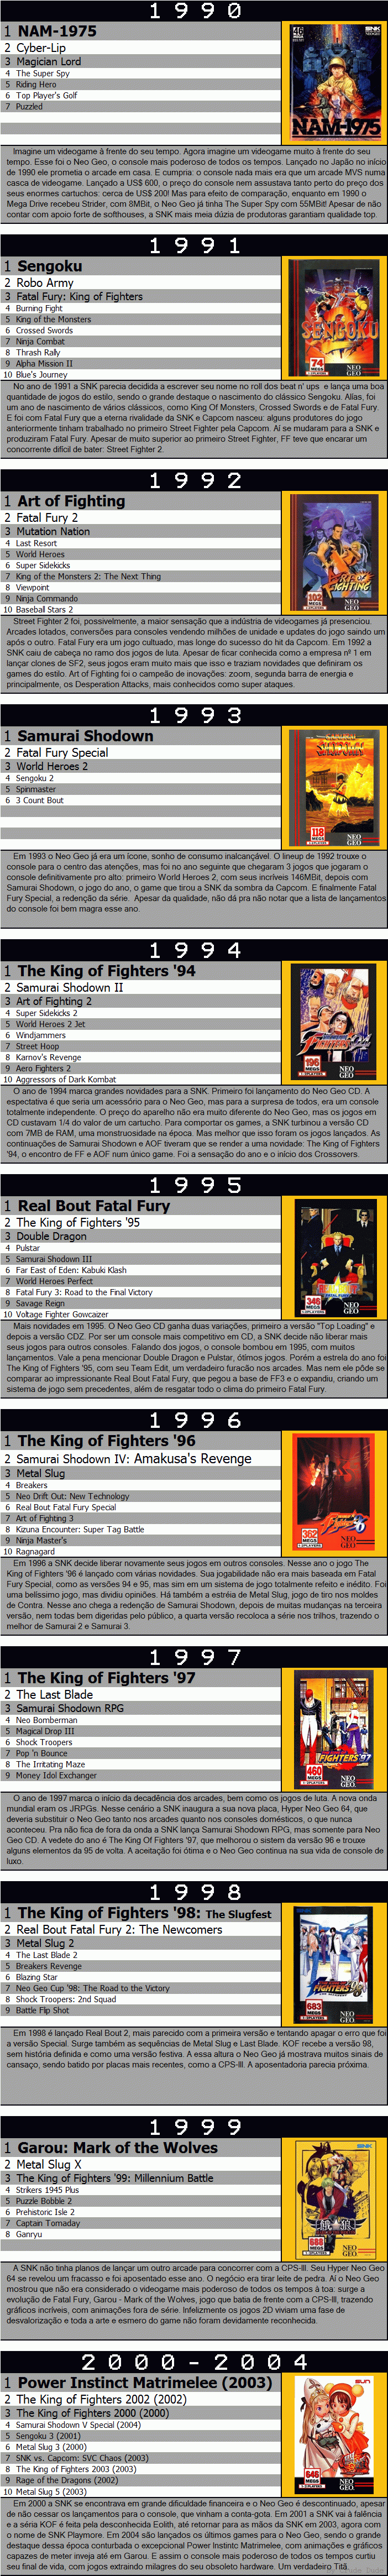 King of Fighters 98 e Metal Slug 3 serão relançados para o